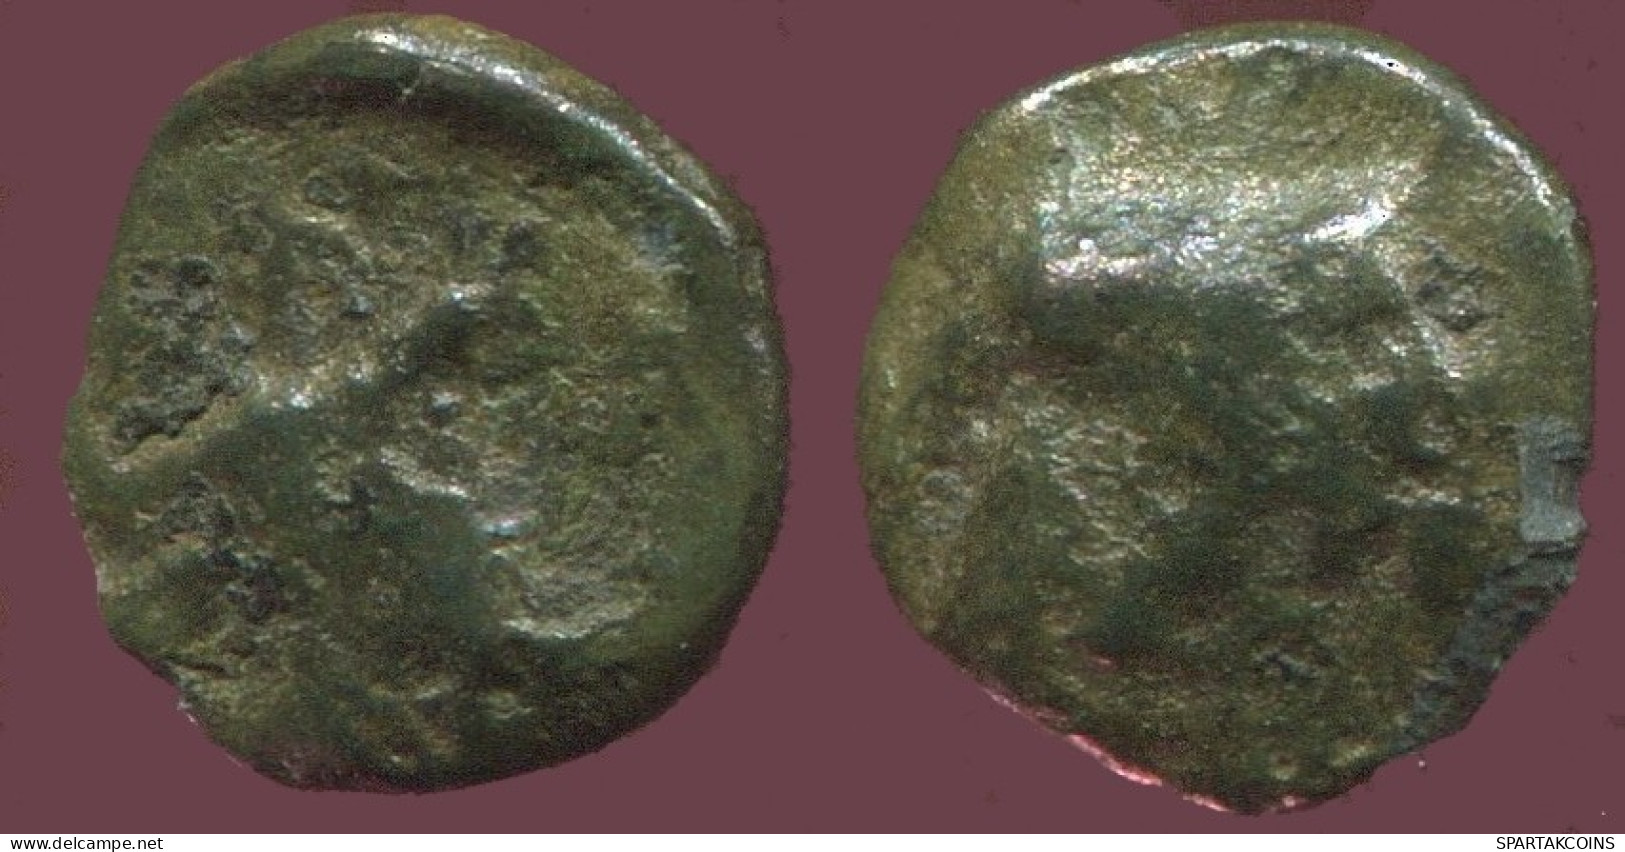 Antike Authentische Original GRIECHISCHE Münze 0.5g/8mm #ANT1577.9.D.A - Greek